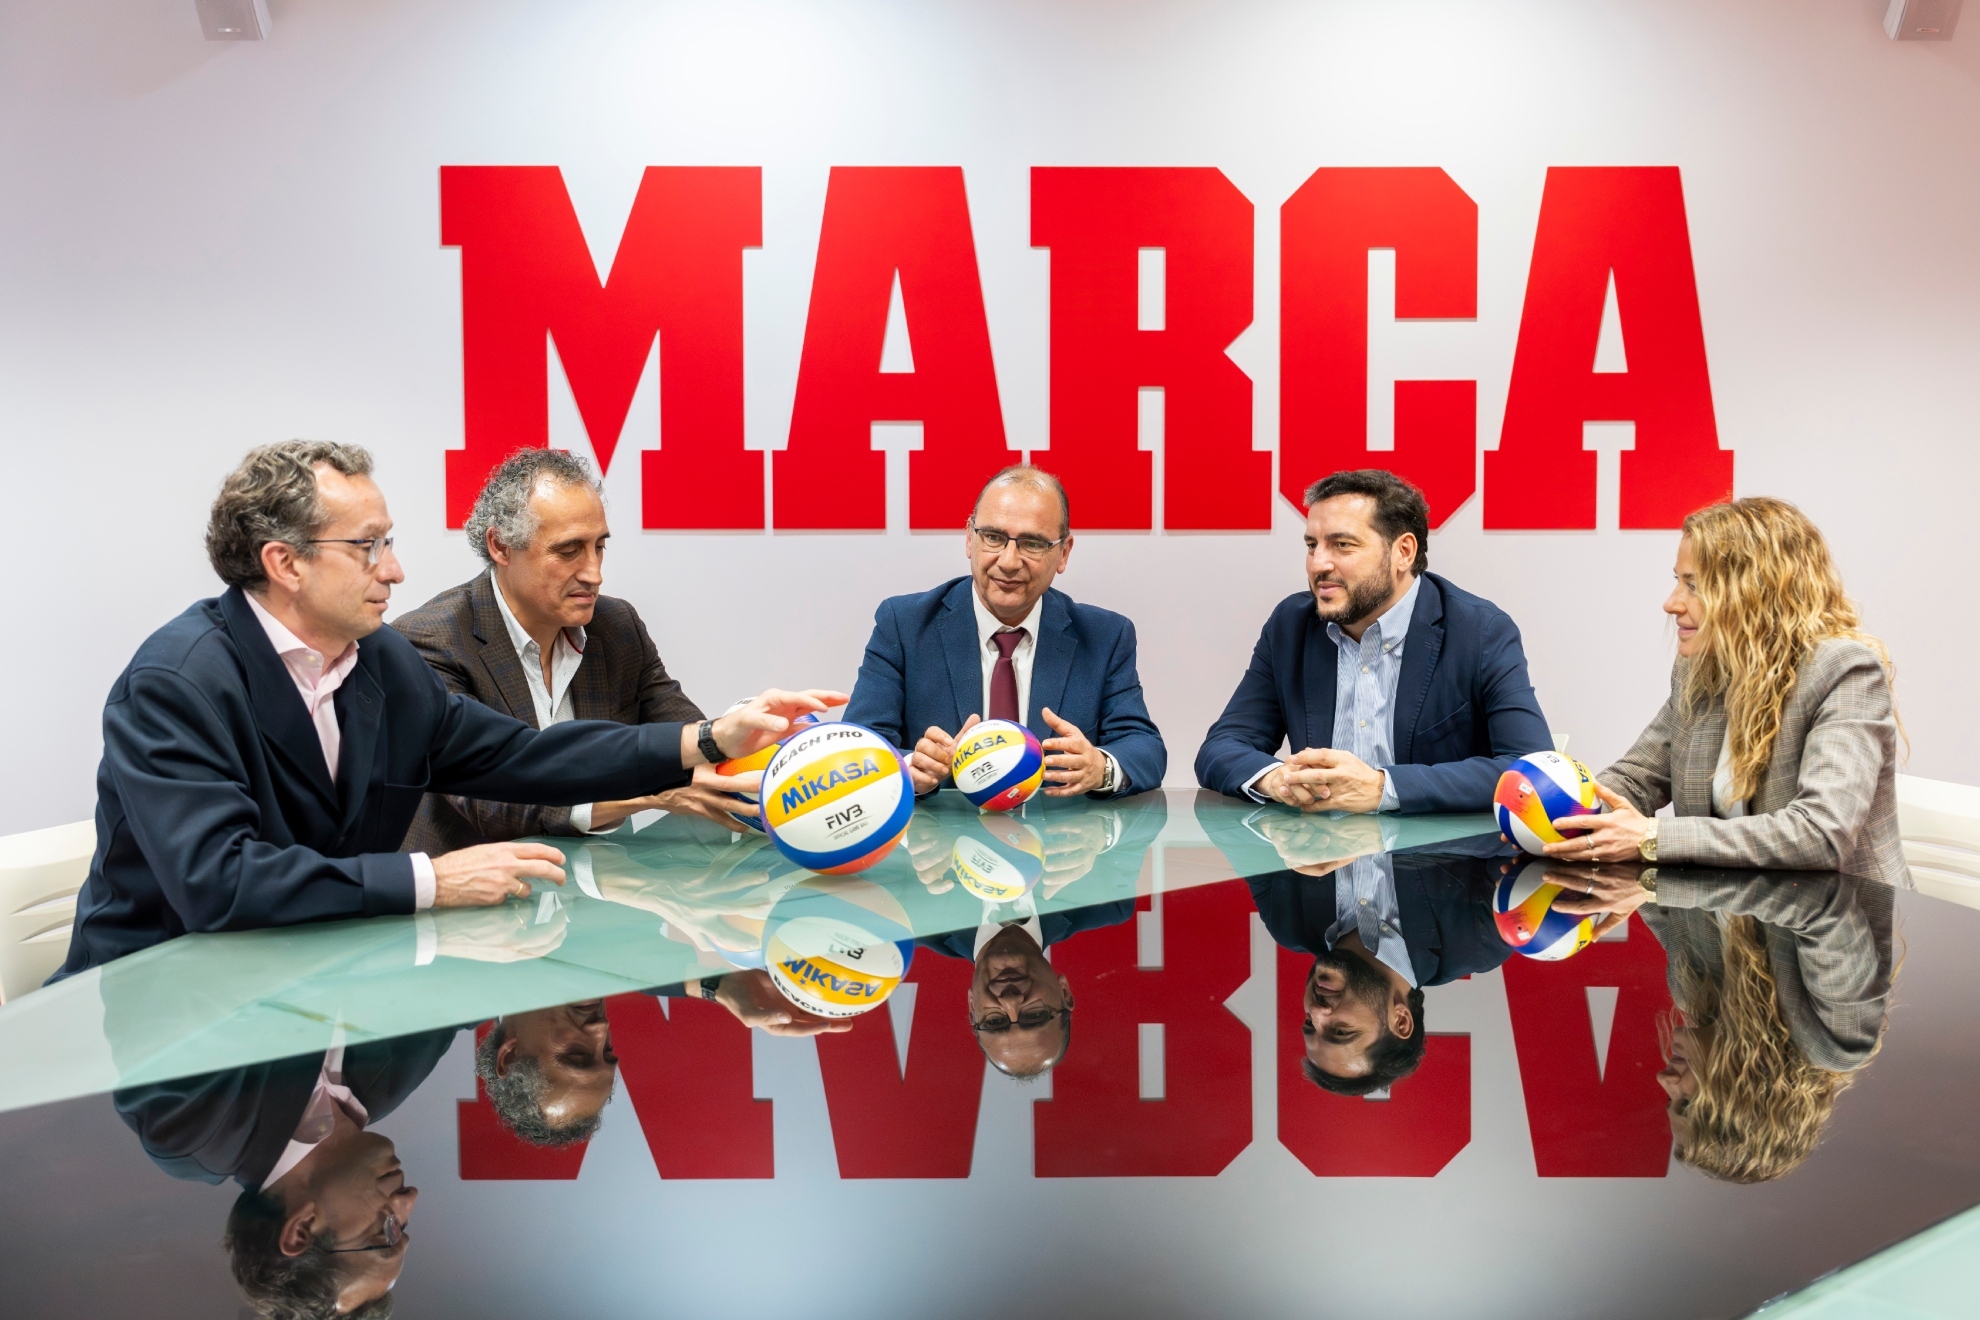 Ignacio Cid, Javier Garca, Juan Ignacio Gallardo, Felipe Pascual y Gema Monjas en la Redaccin de MARCA